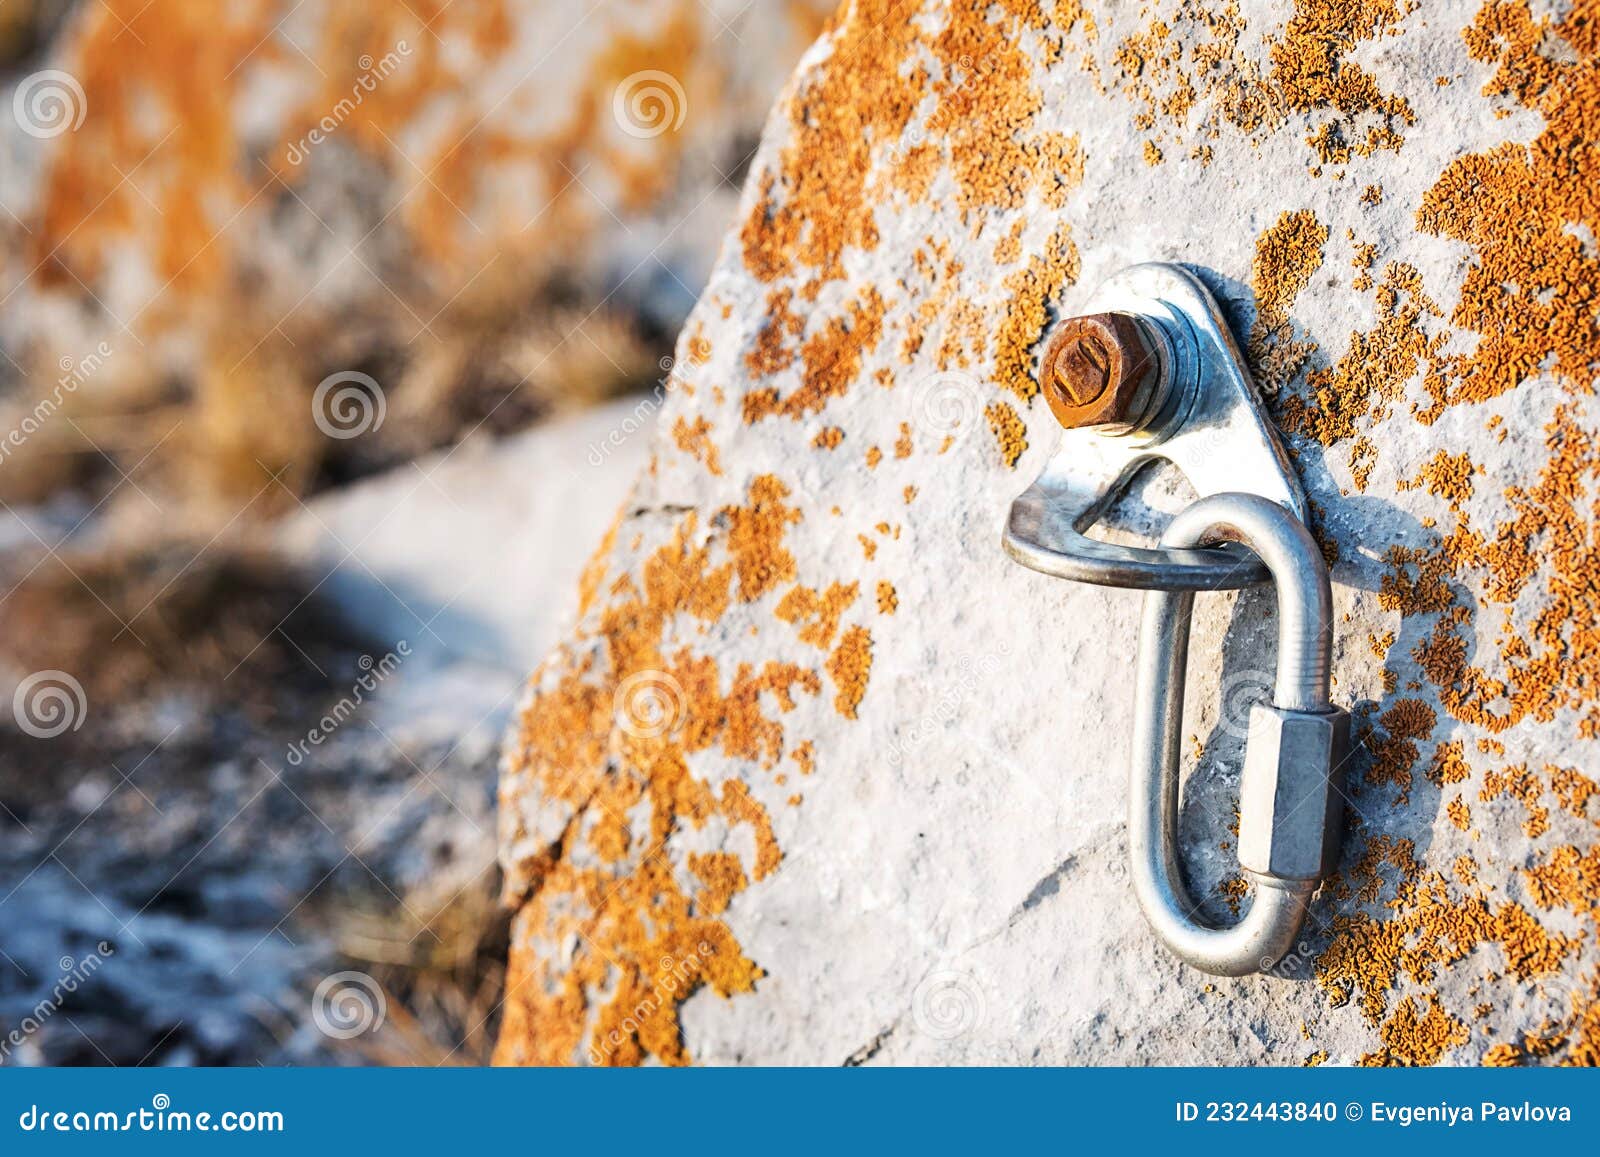 ÃÂ¡limbing carabiner hook and trigger device in stone. carabiner for mountaineering on rocky background.